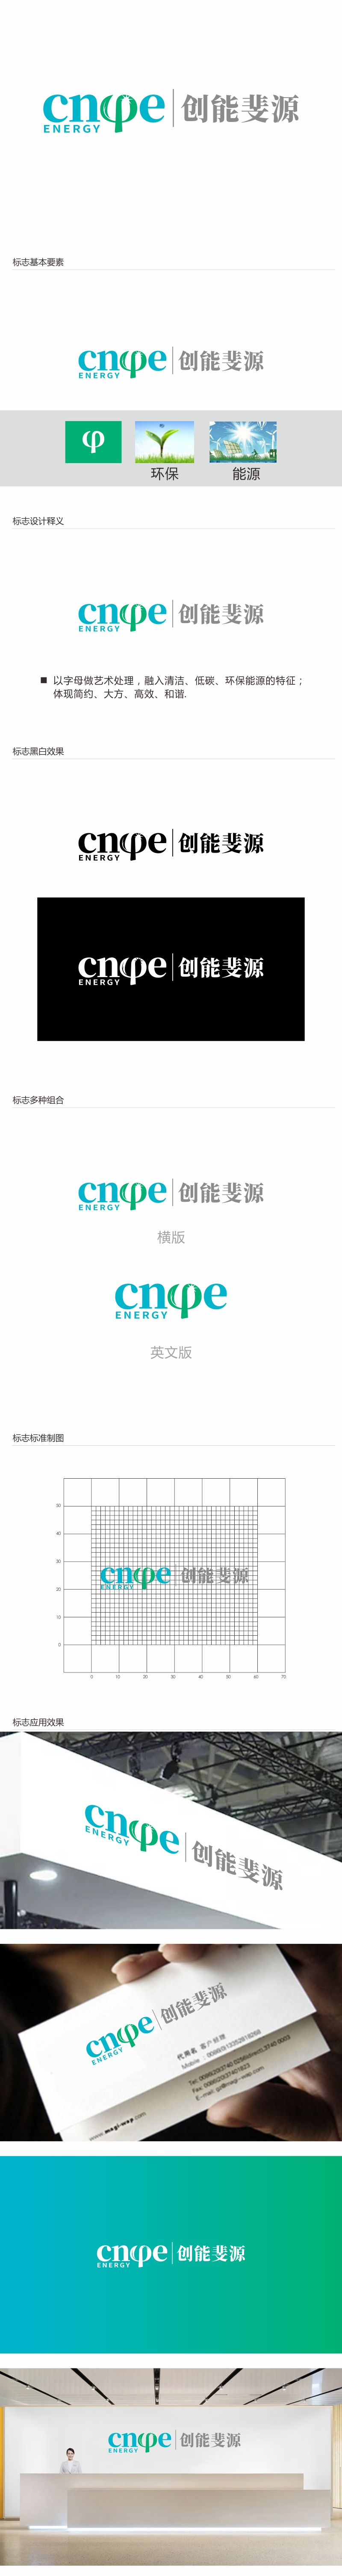 林思源的中文：创能斐源；英文：cnφe energy或者cnphie energylogo设计